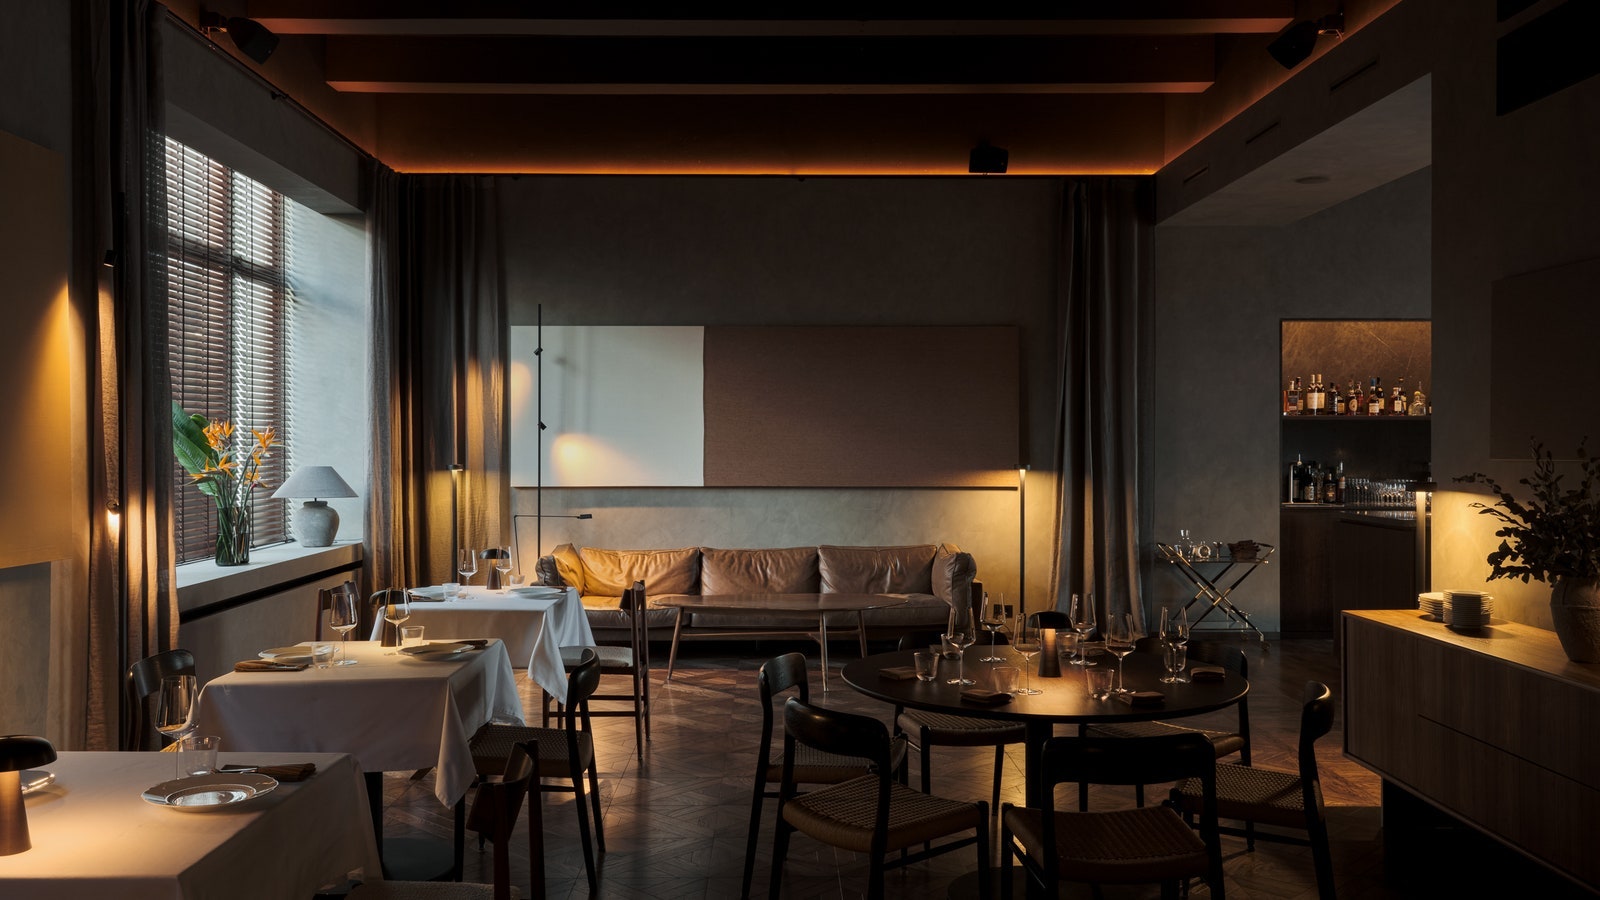 Полный гид AD по ресторанам СанктПетербурга 2021 19 заведений с красивым интерьером и классной кухней